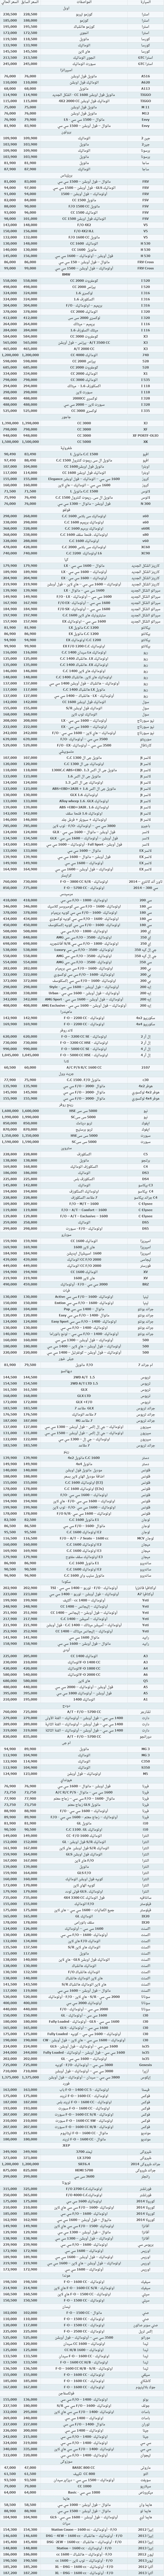 انواع السيارات واسعارها في مصر 2015 , احدث اسعار السيارات فى مصر 2015